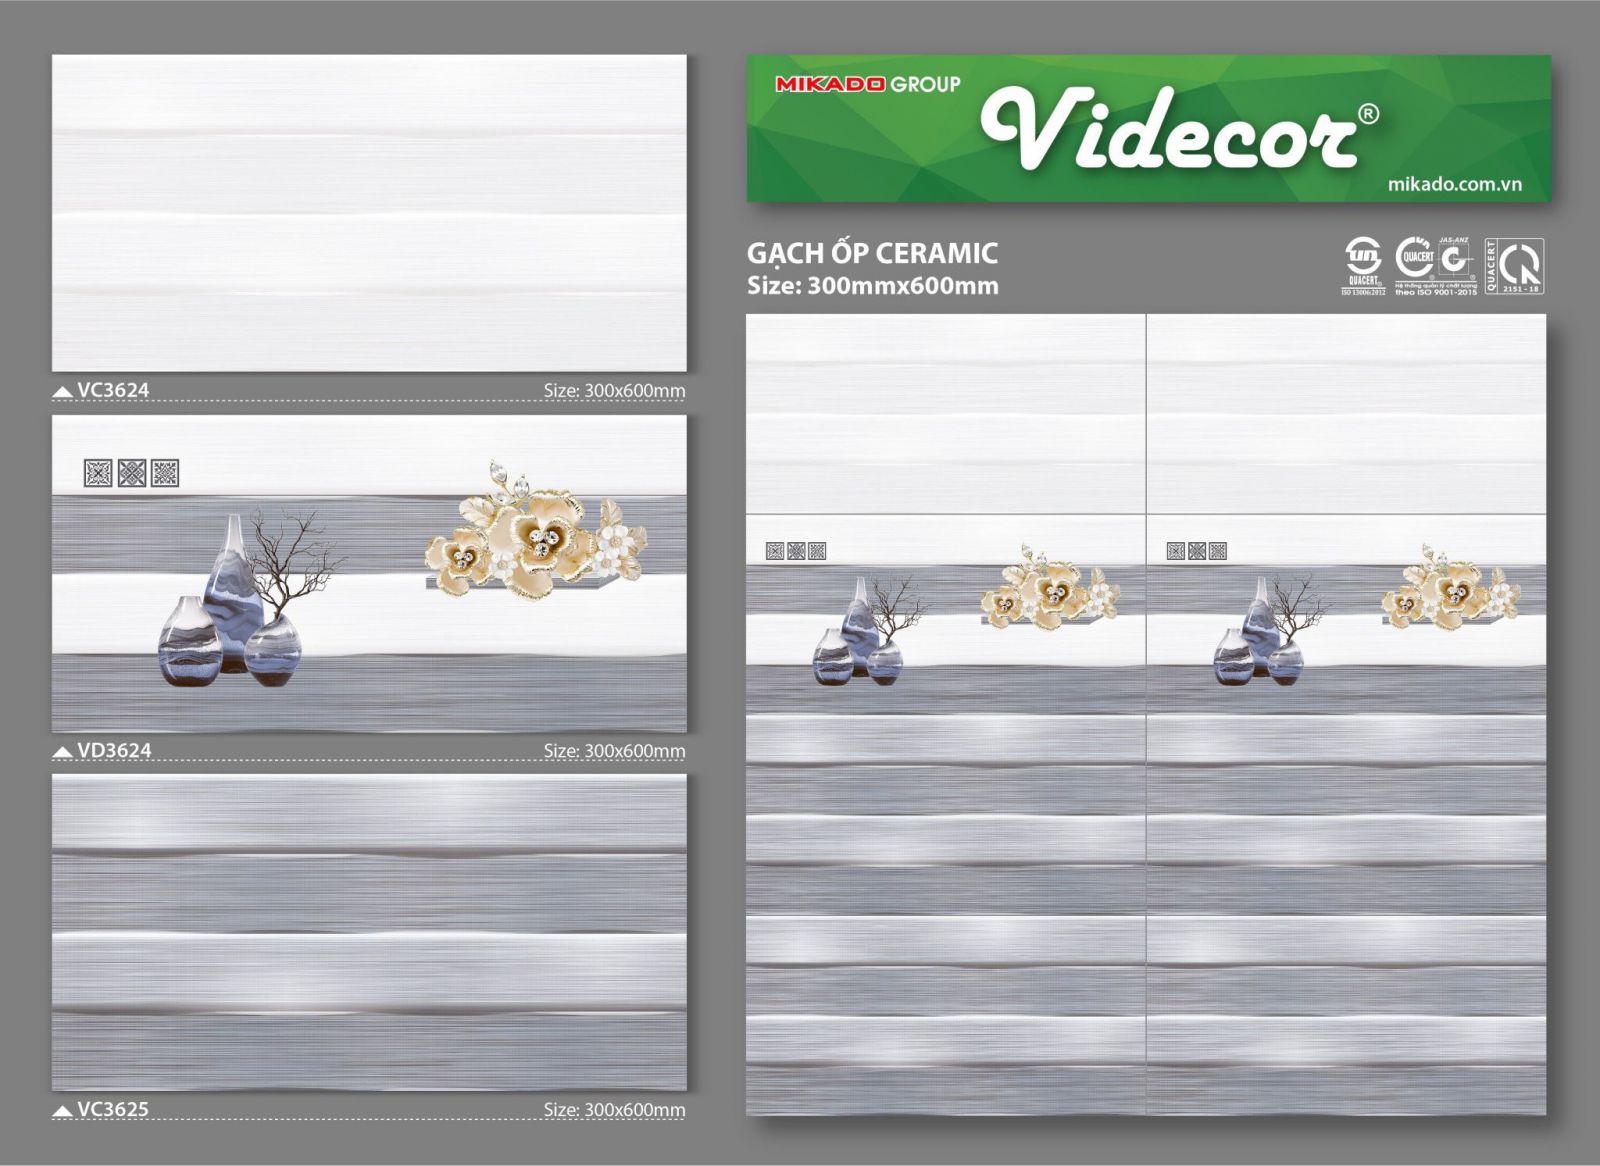 Gạch 300x600 Mikado Videcor VC3624-VD3624-VC3625 giá rẻ